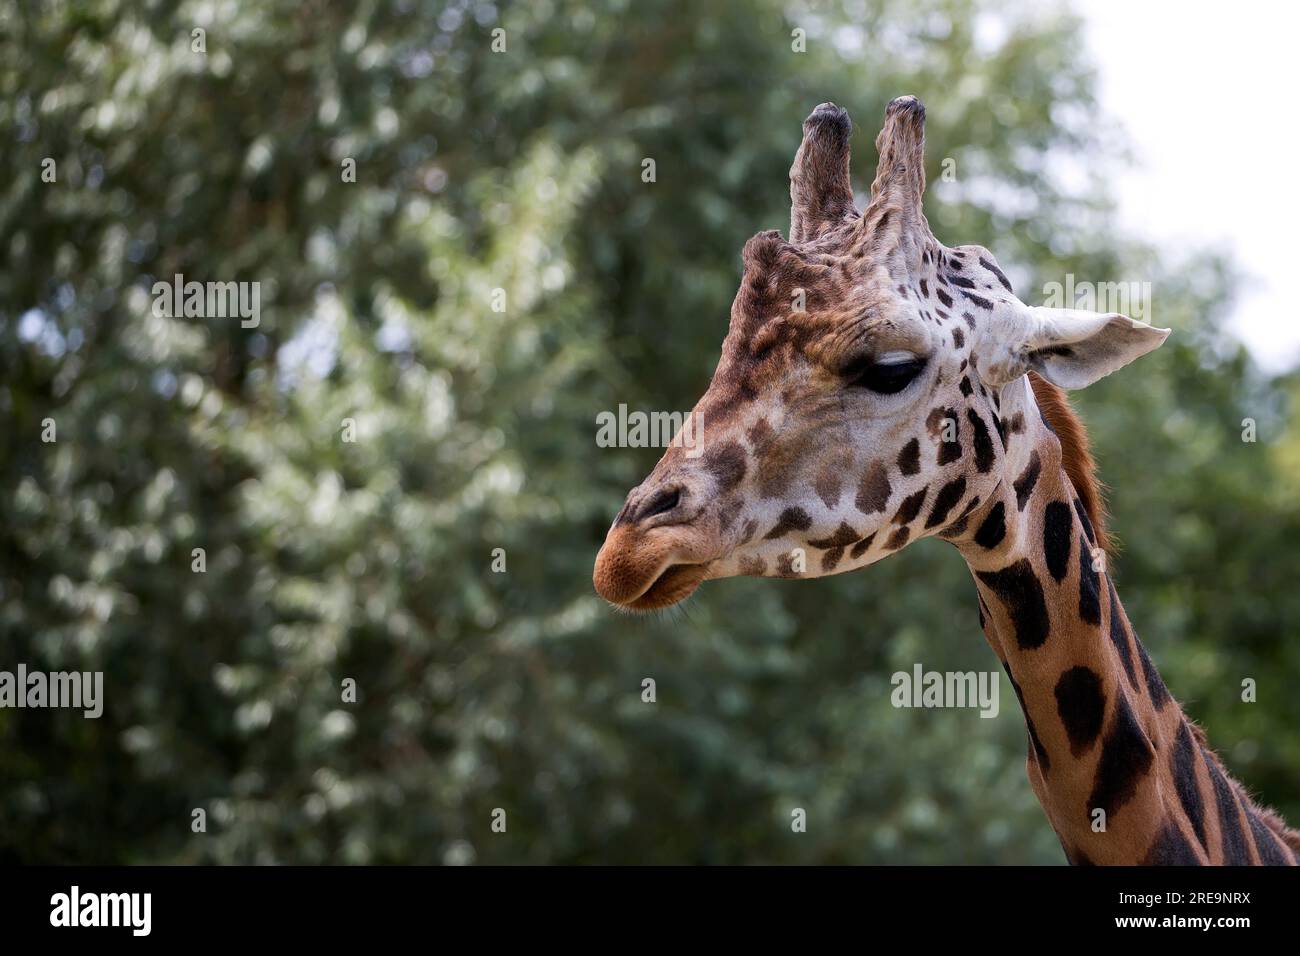 Girafe dans un portrait éclairci Banque D'Images